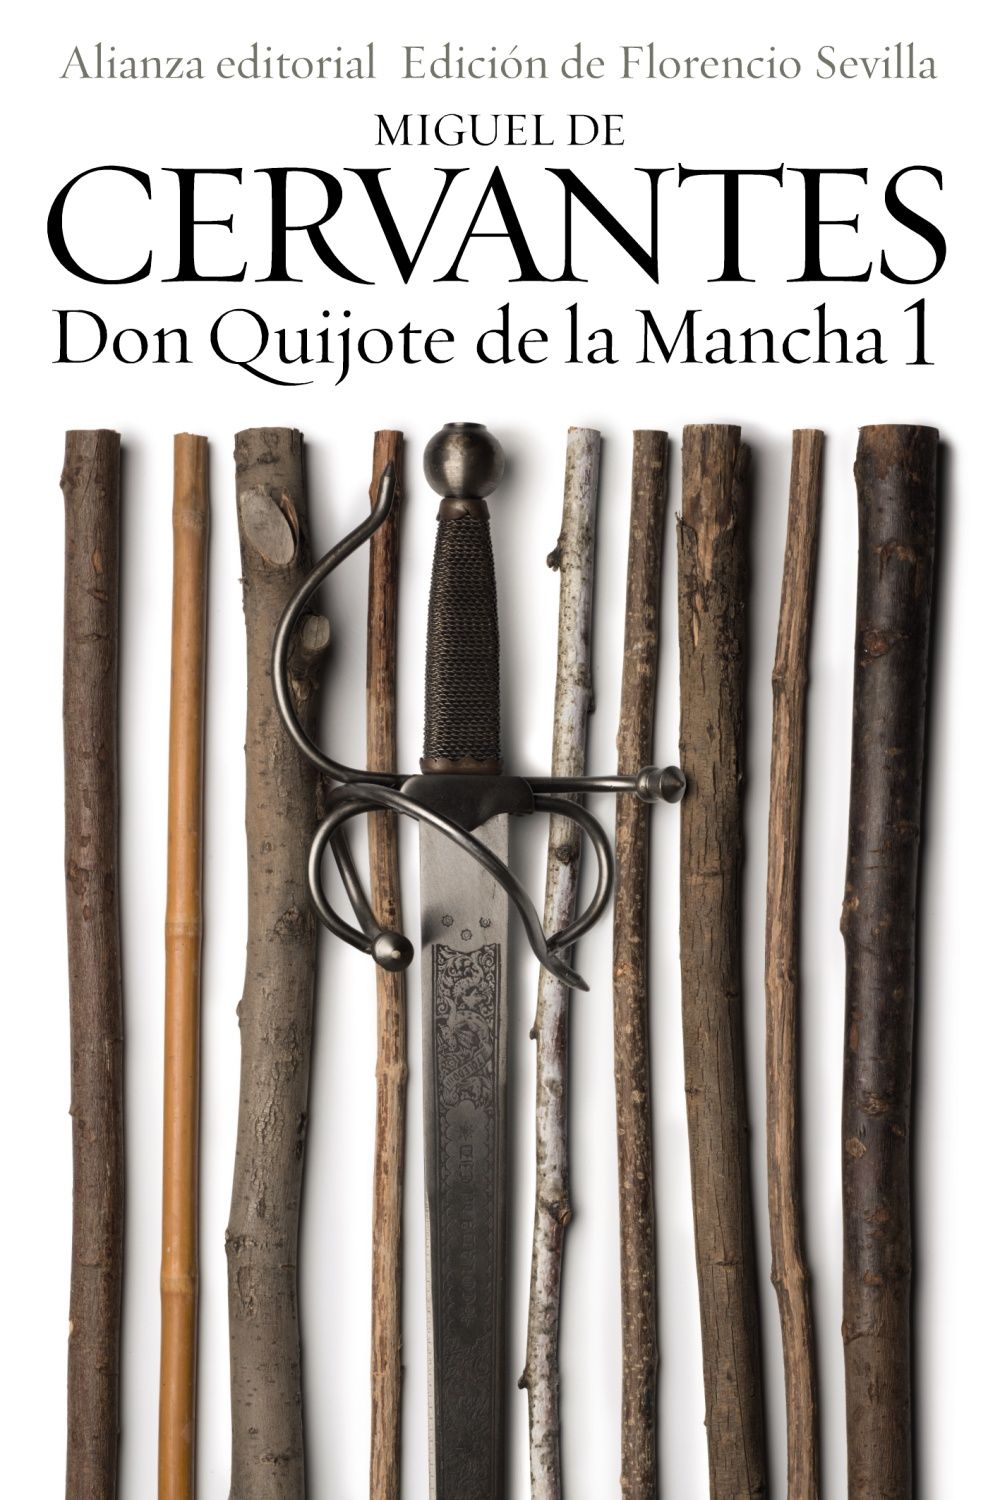 DON QUIJOTE DE LA MANCHA, 1. 